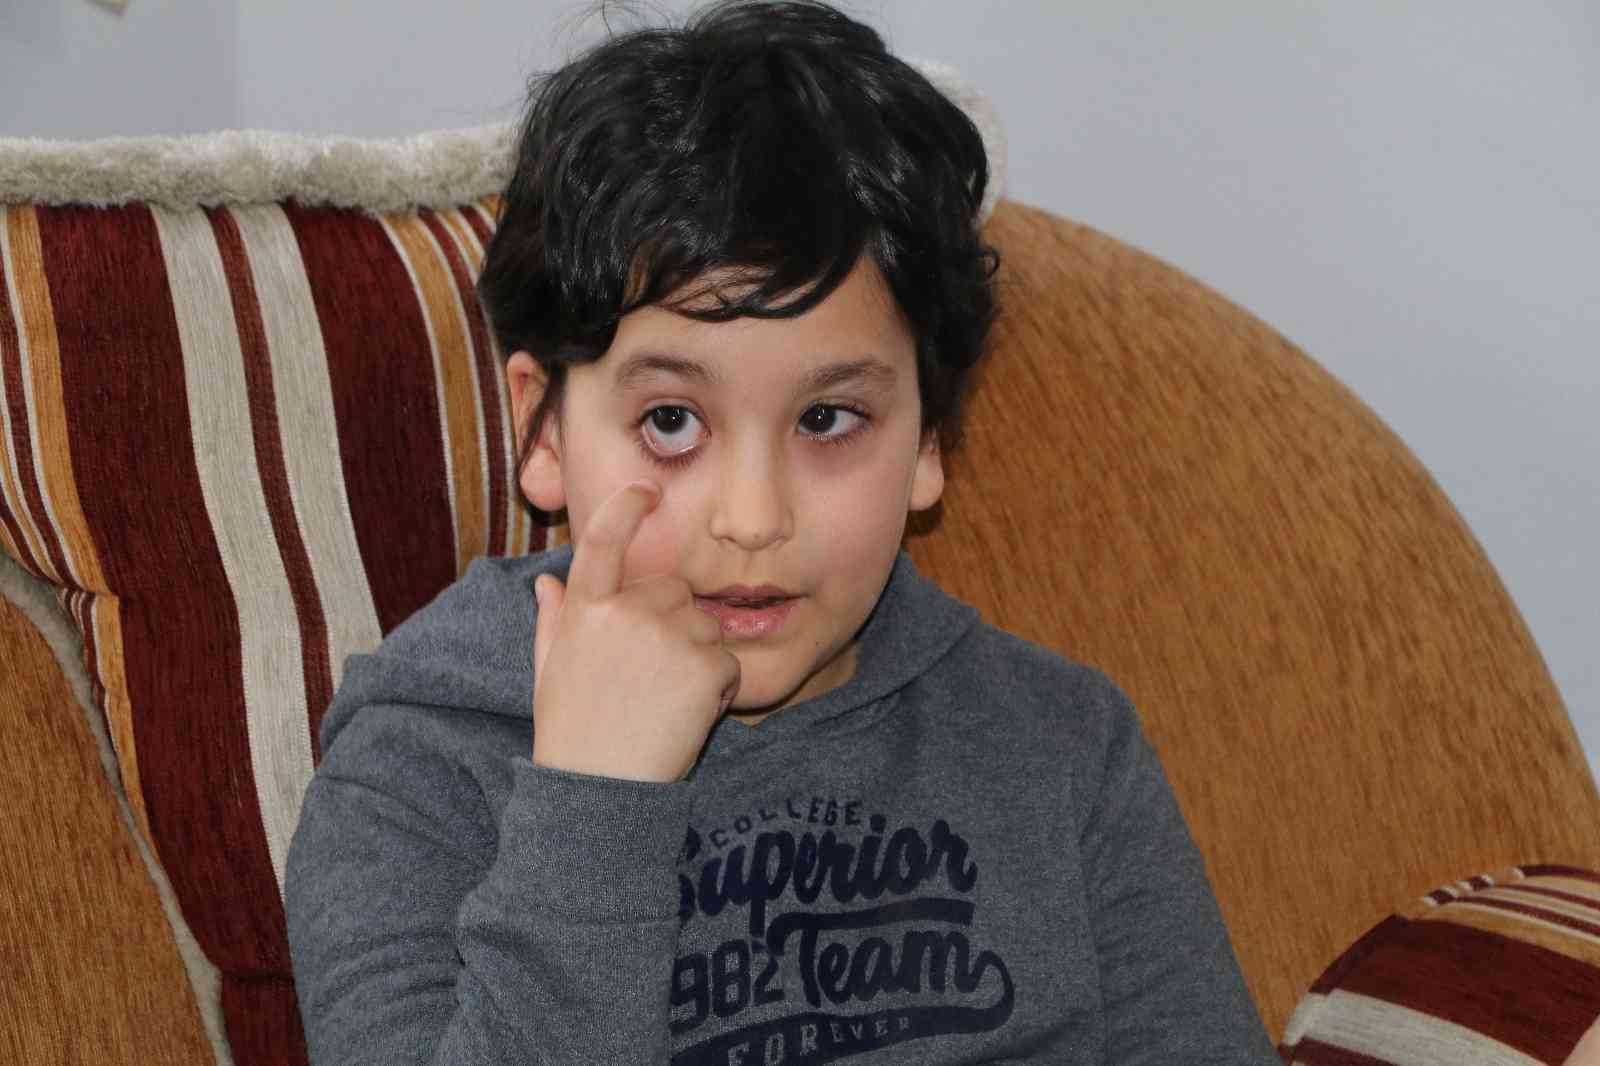 Daha 8 yaşında 9. kez göz ameliyatı olacak #rize